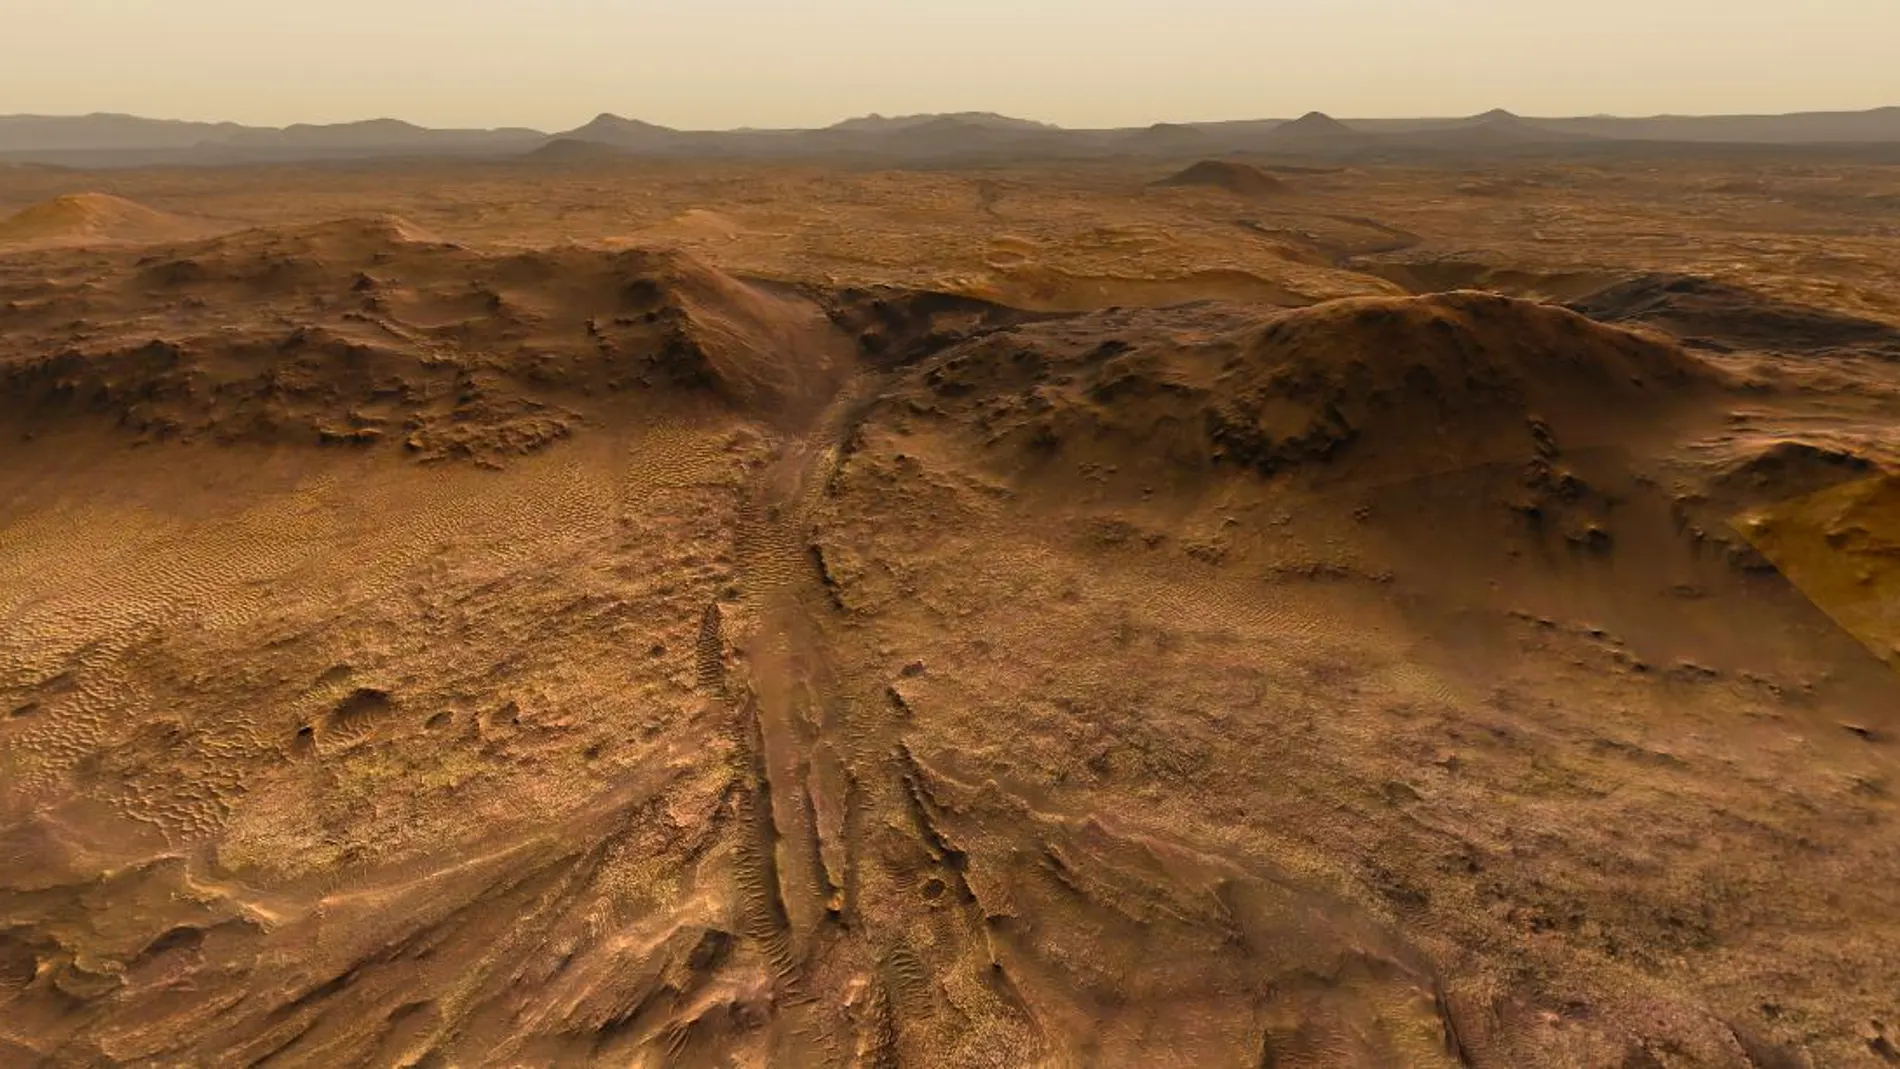 Seguir una ruta jamás explorada por otro humano, el reto de este mapa de Marte.